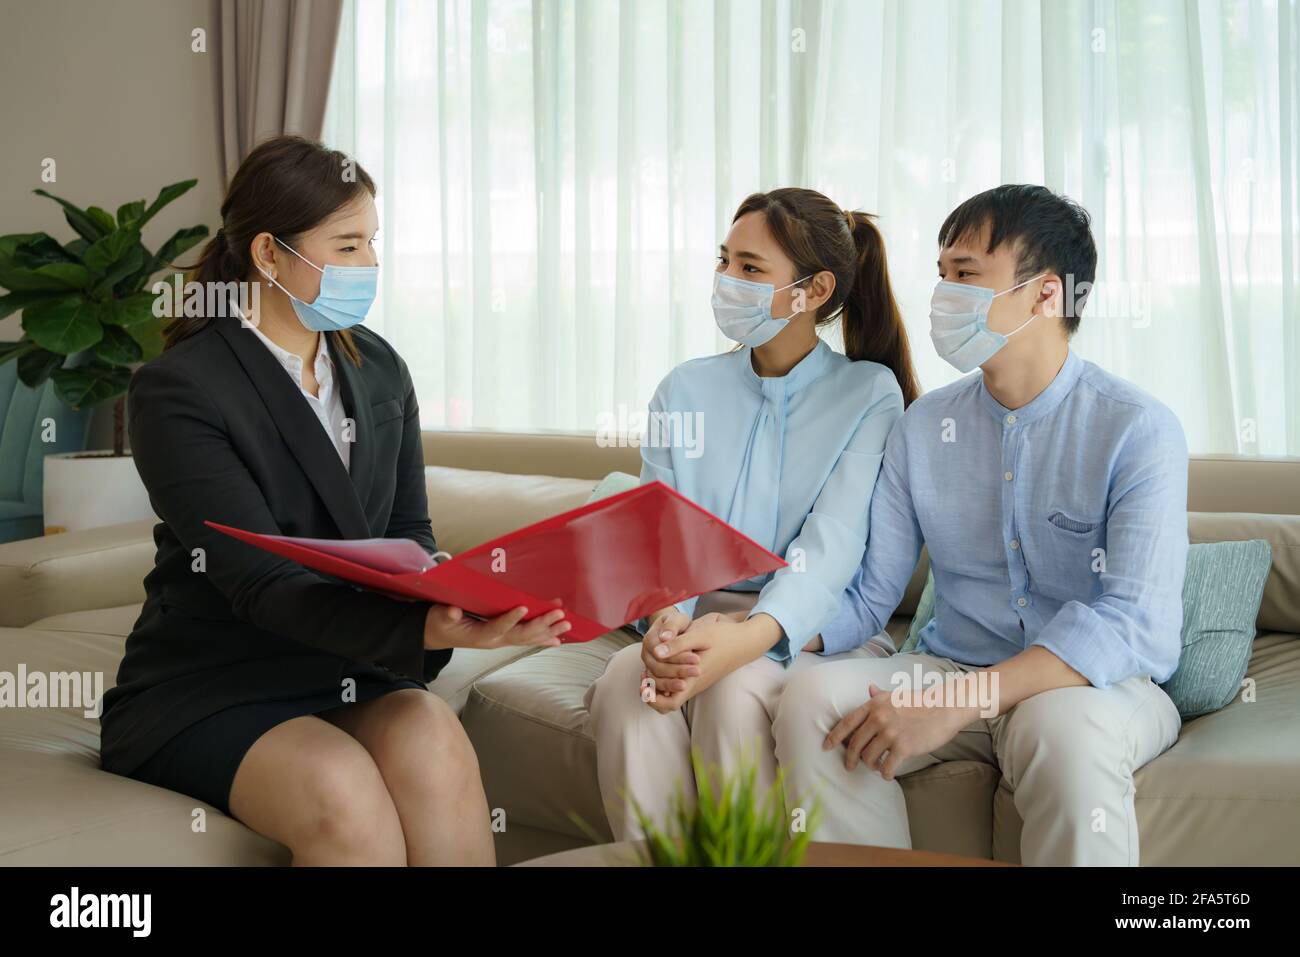 L'intermediario assicurativo della donna asiatica sta offrendo i particolari della copertura di assicurazione contro le malattie per COVID-19 alla coppia asiatica nei loro soggiorni a casa. Foto Stock